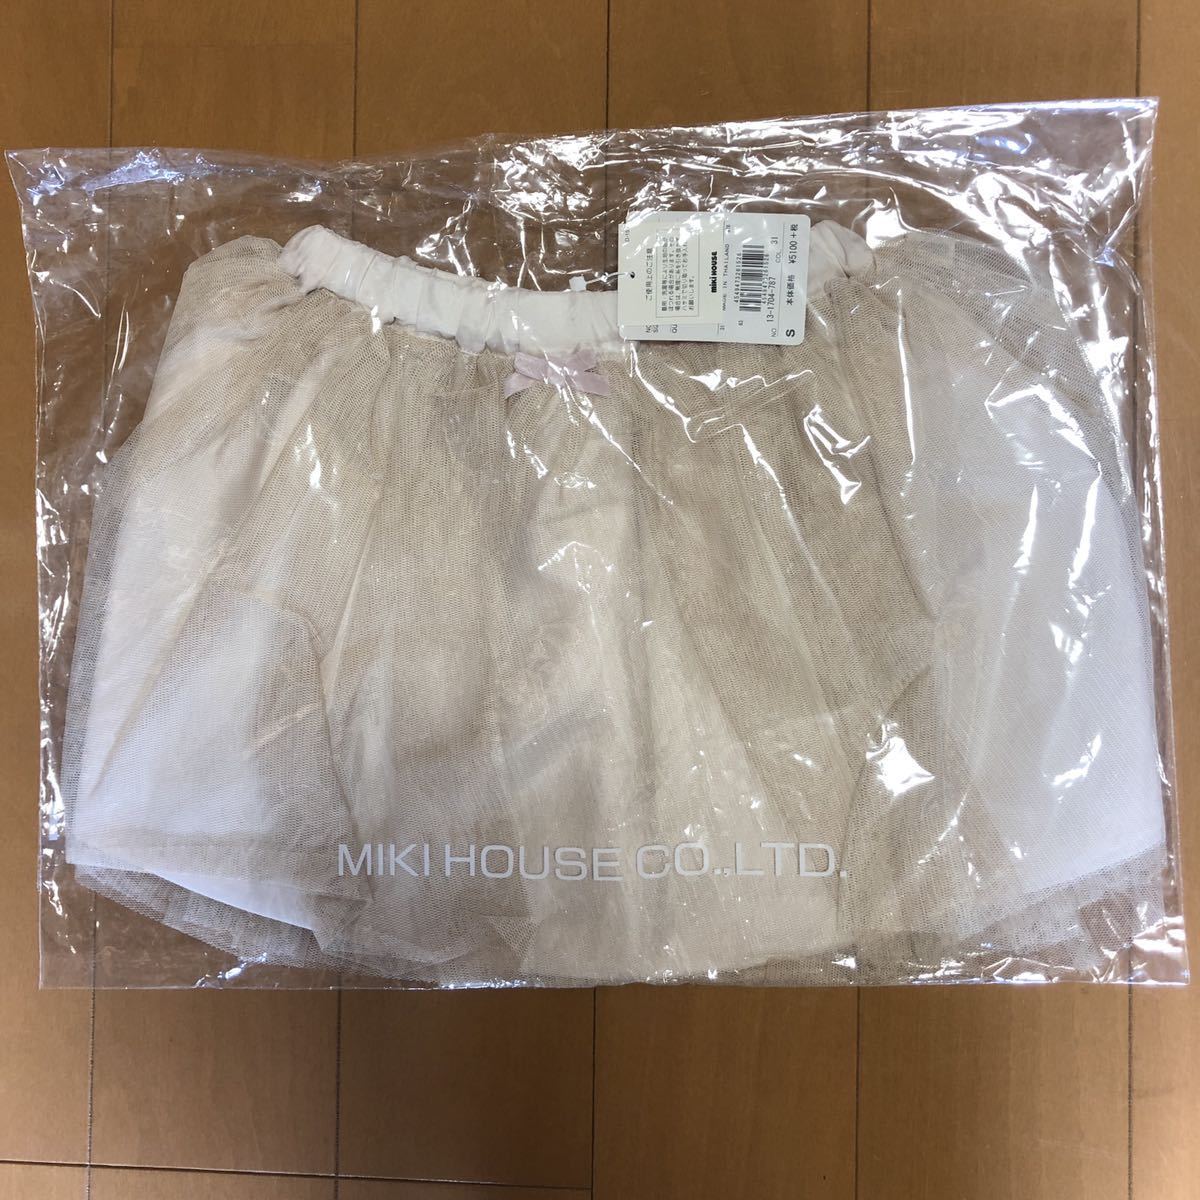 新品未使用タグ付きミキハウスmikihouse チュールスカートSサイズ日本代购,买对网